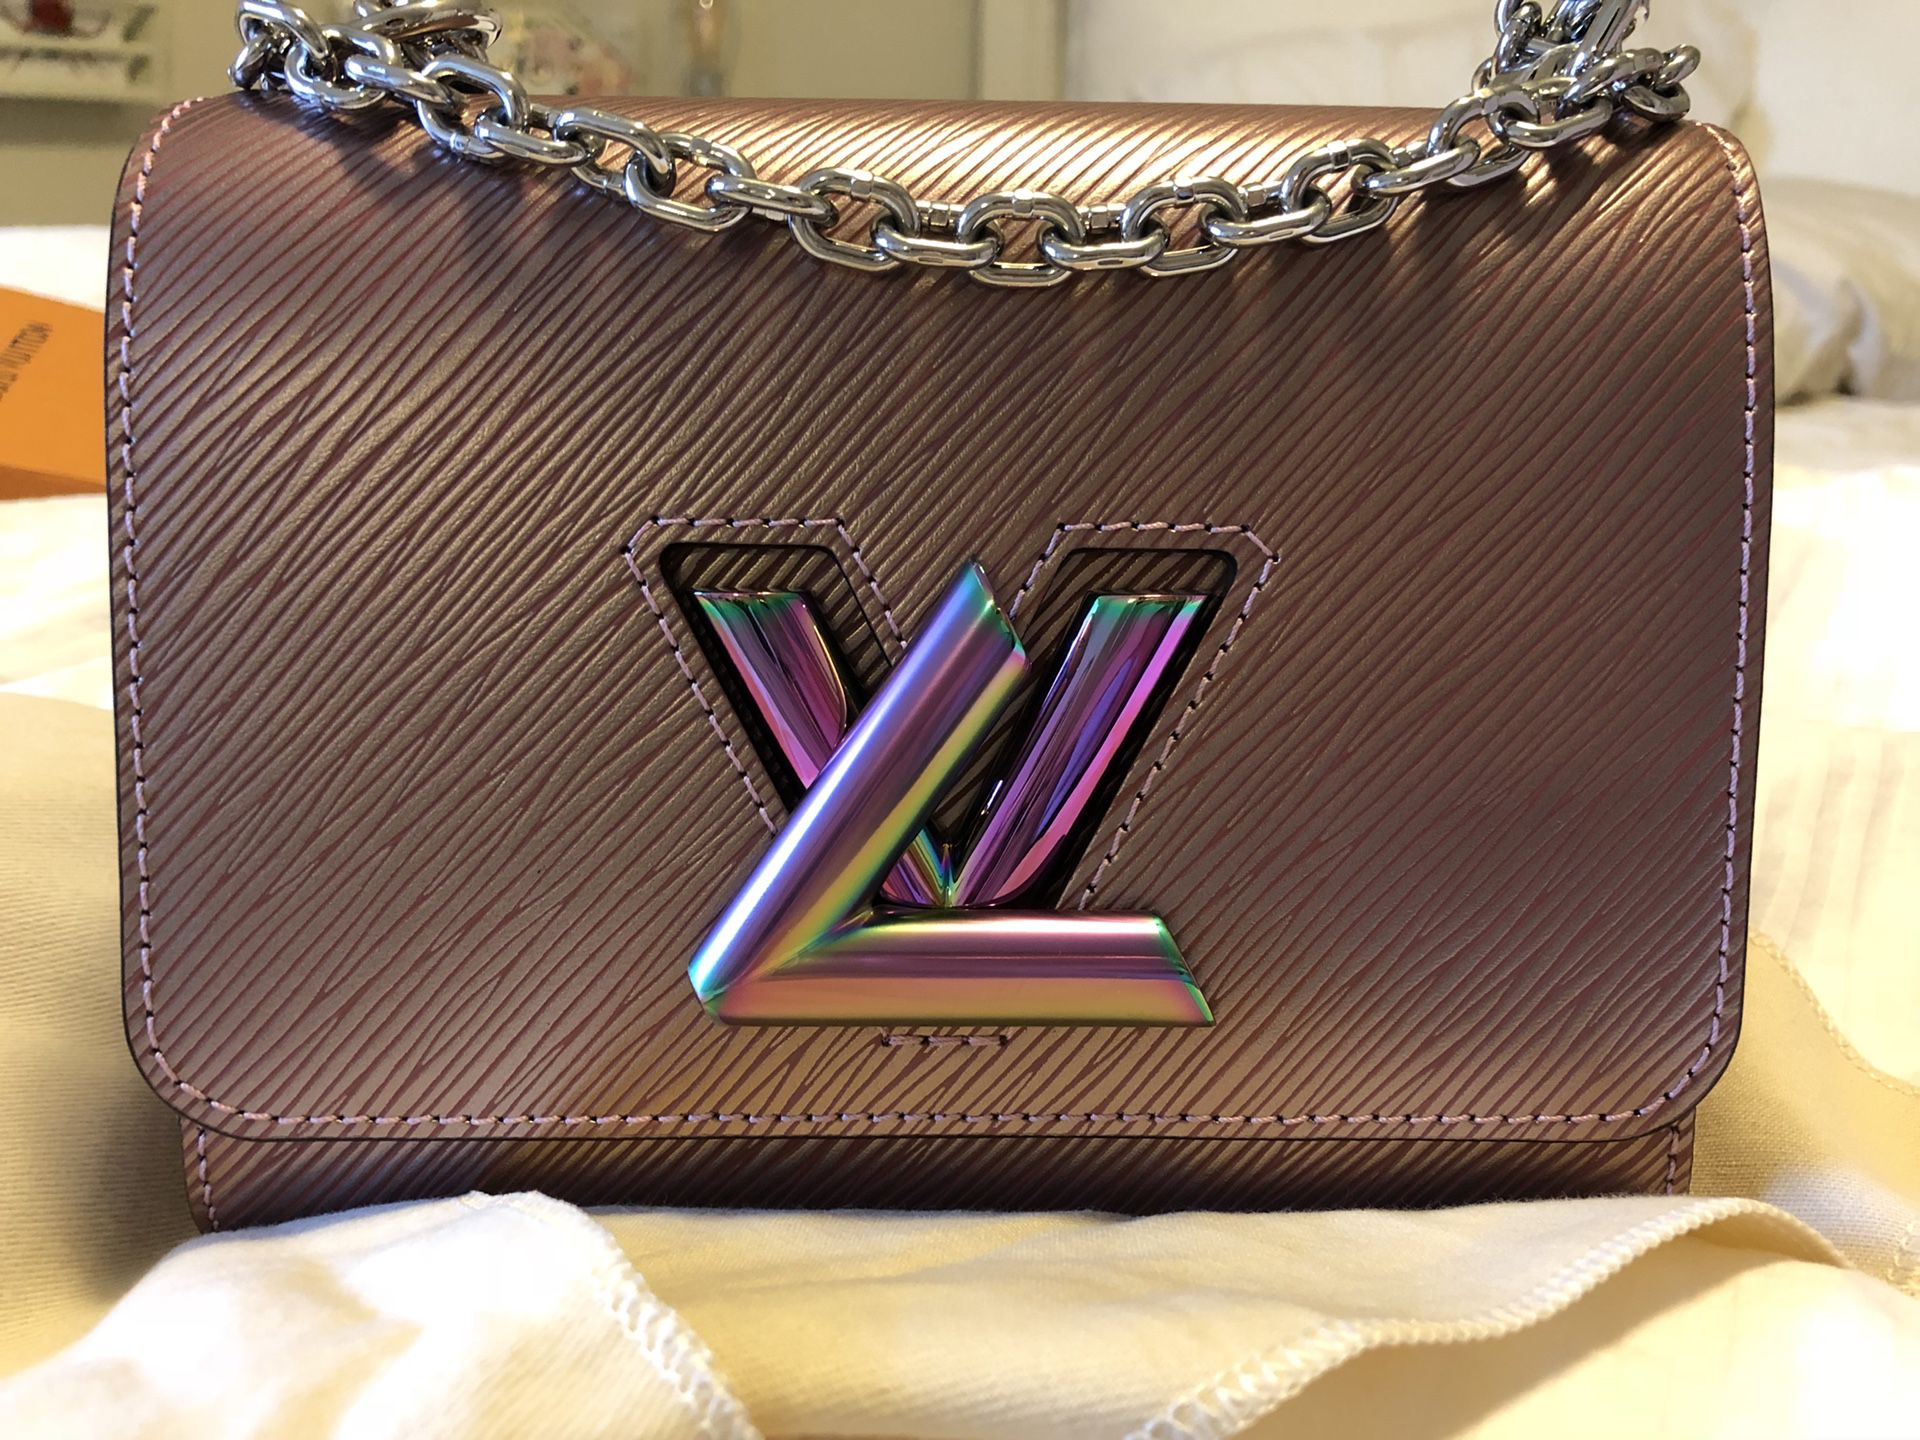 Louis Vuitton Gold Epi Leather Twist PM Bag